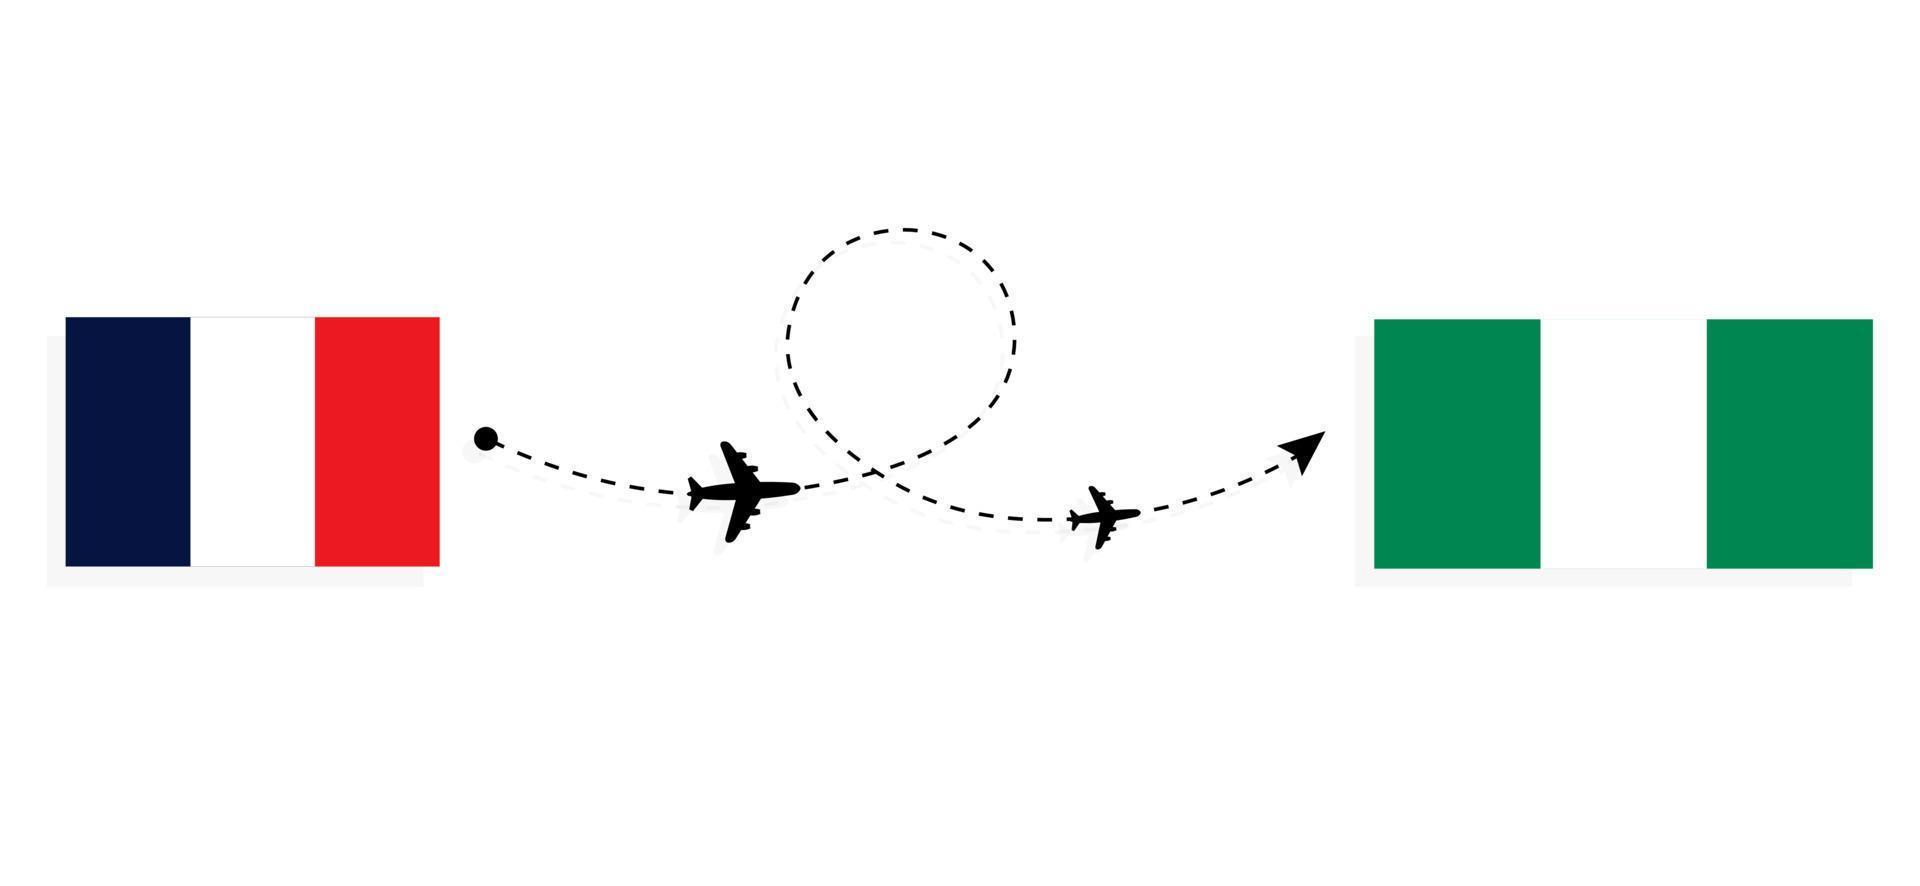 vol et voyage de la france au nigeria par concept de voyage en avion de passagers vecteur